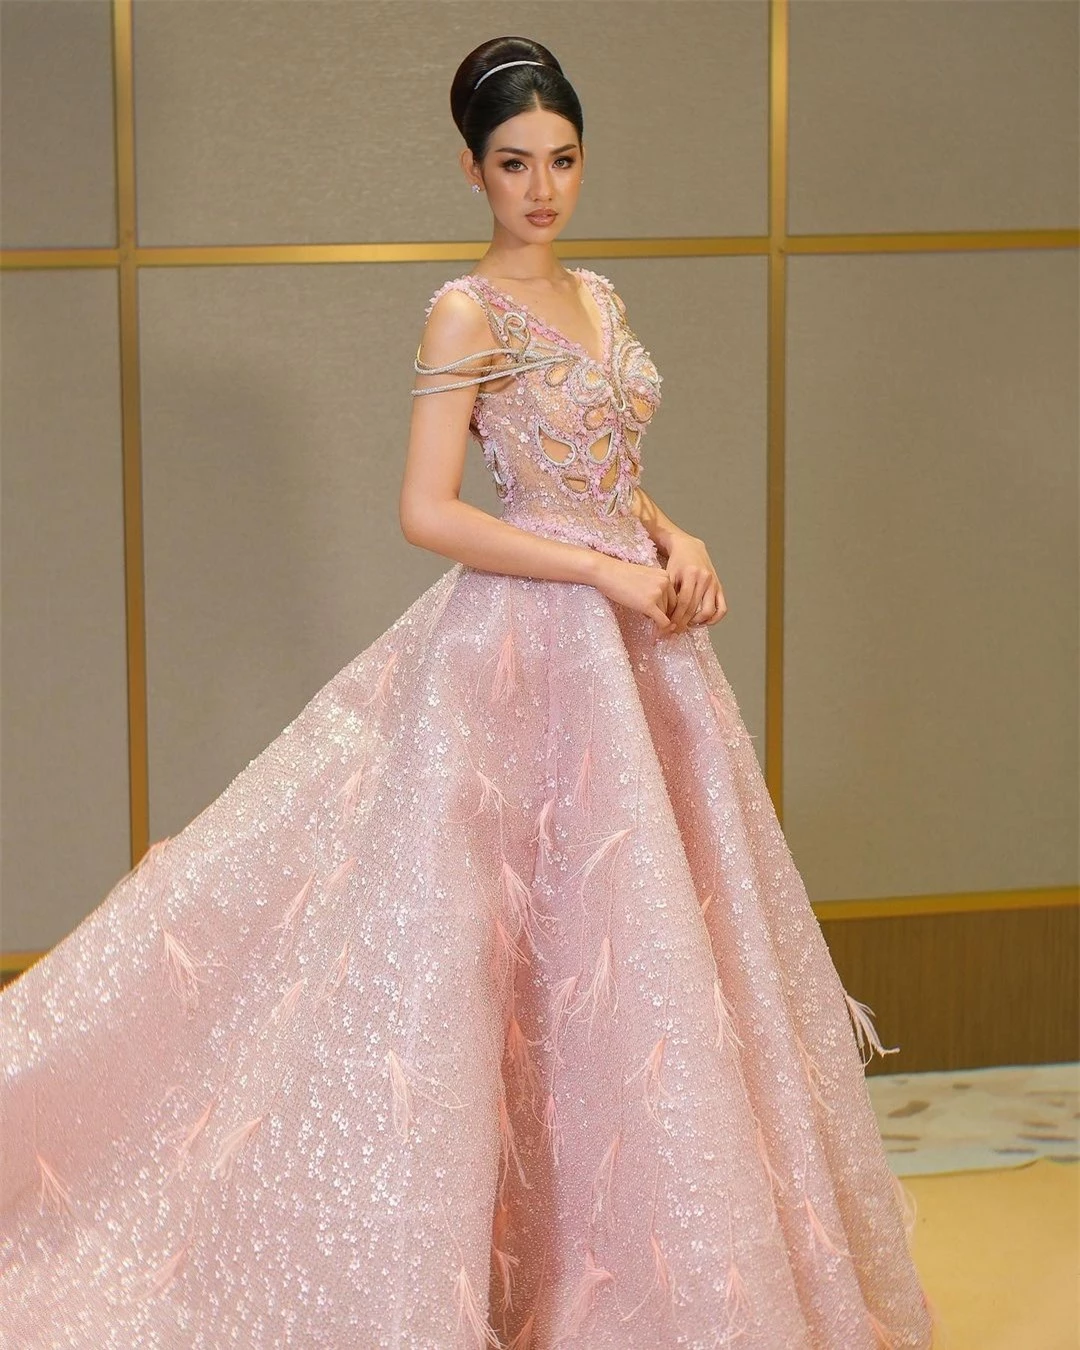 Tân Hoa hậu Hoàn vũ Campuchia được khen ngợi ảnh 14